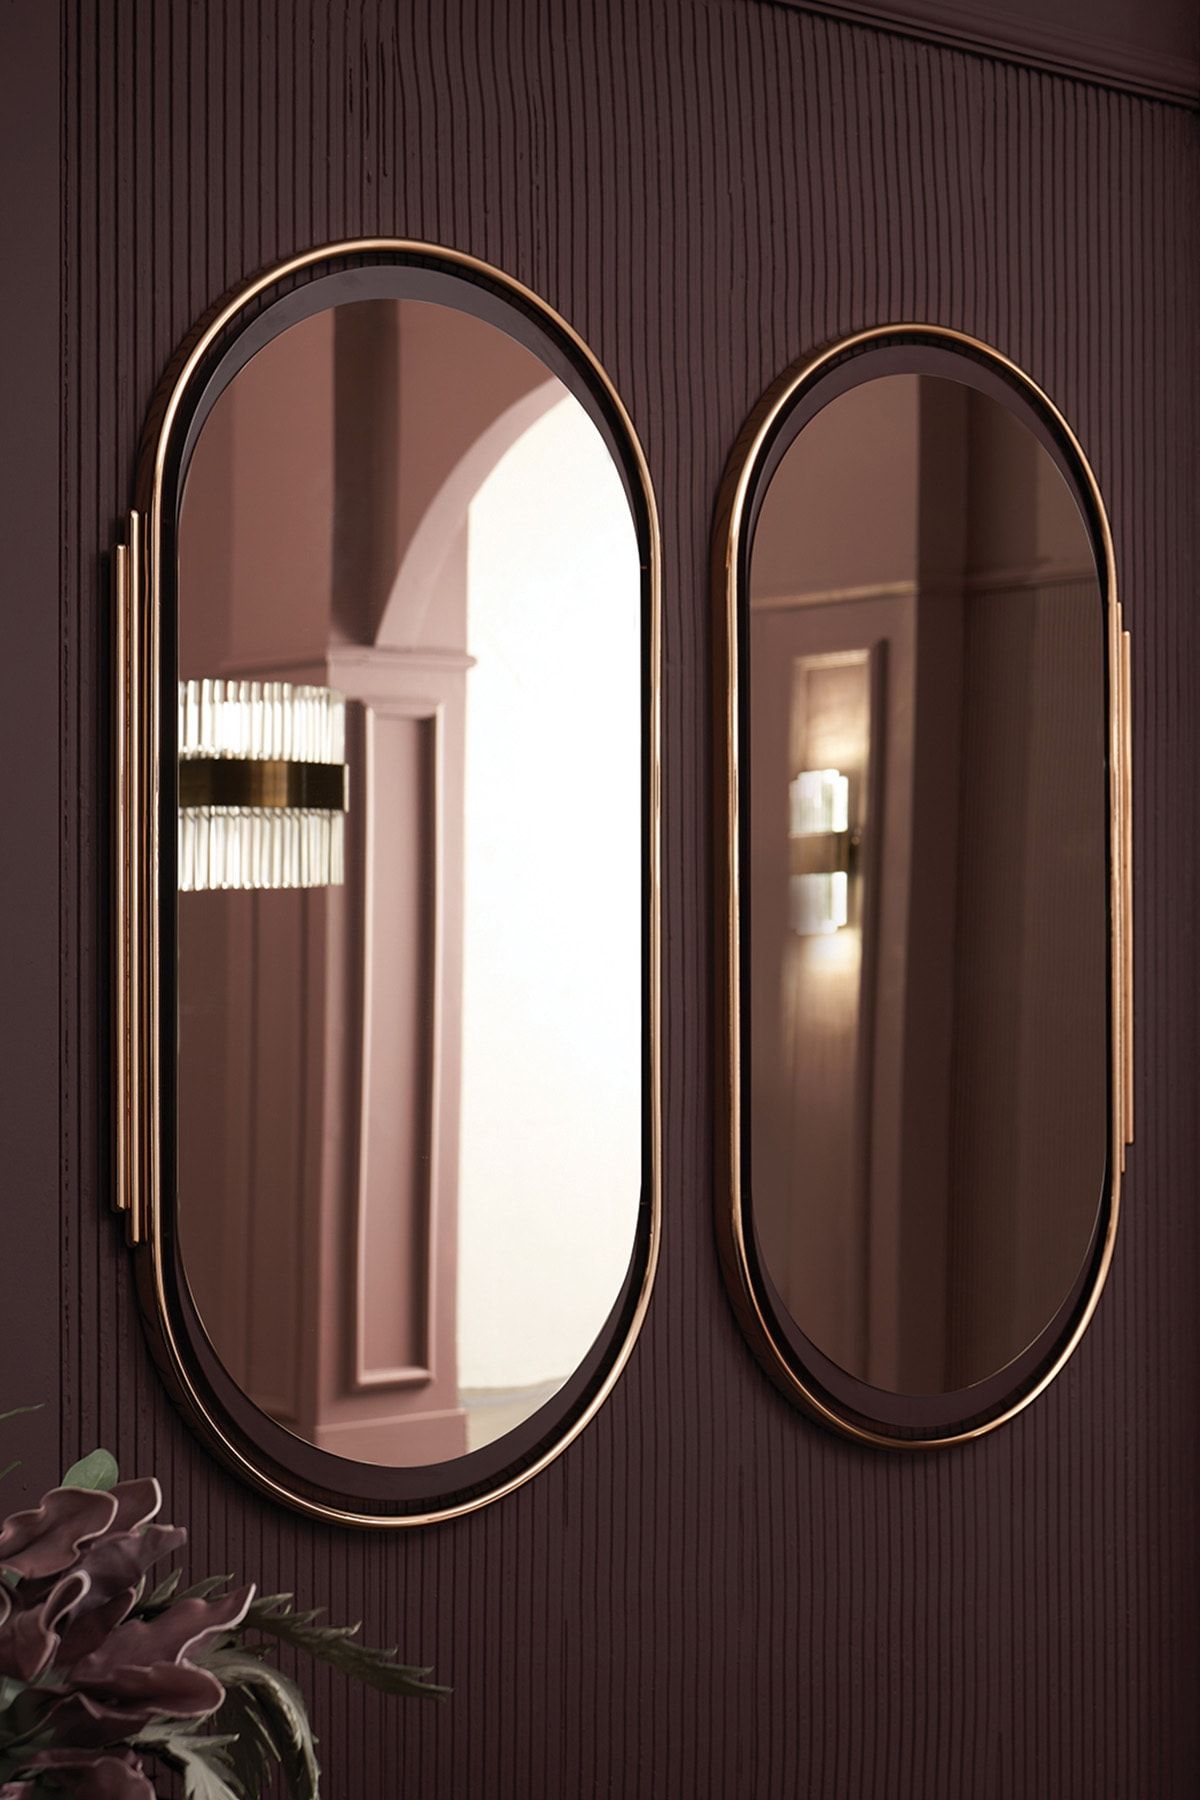 Enza Home Vienna Konsol, Dresuar Aynası - Bordo